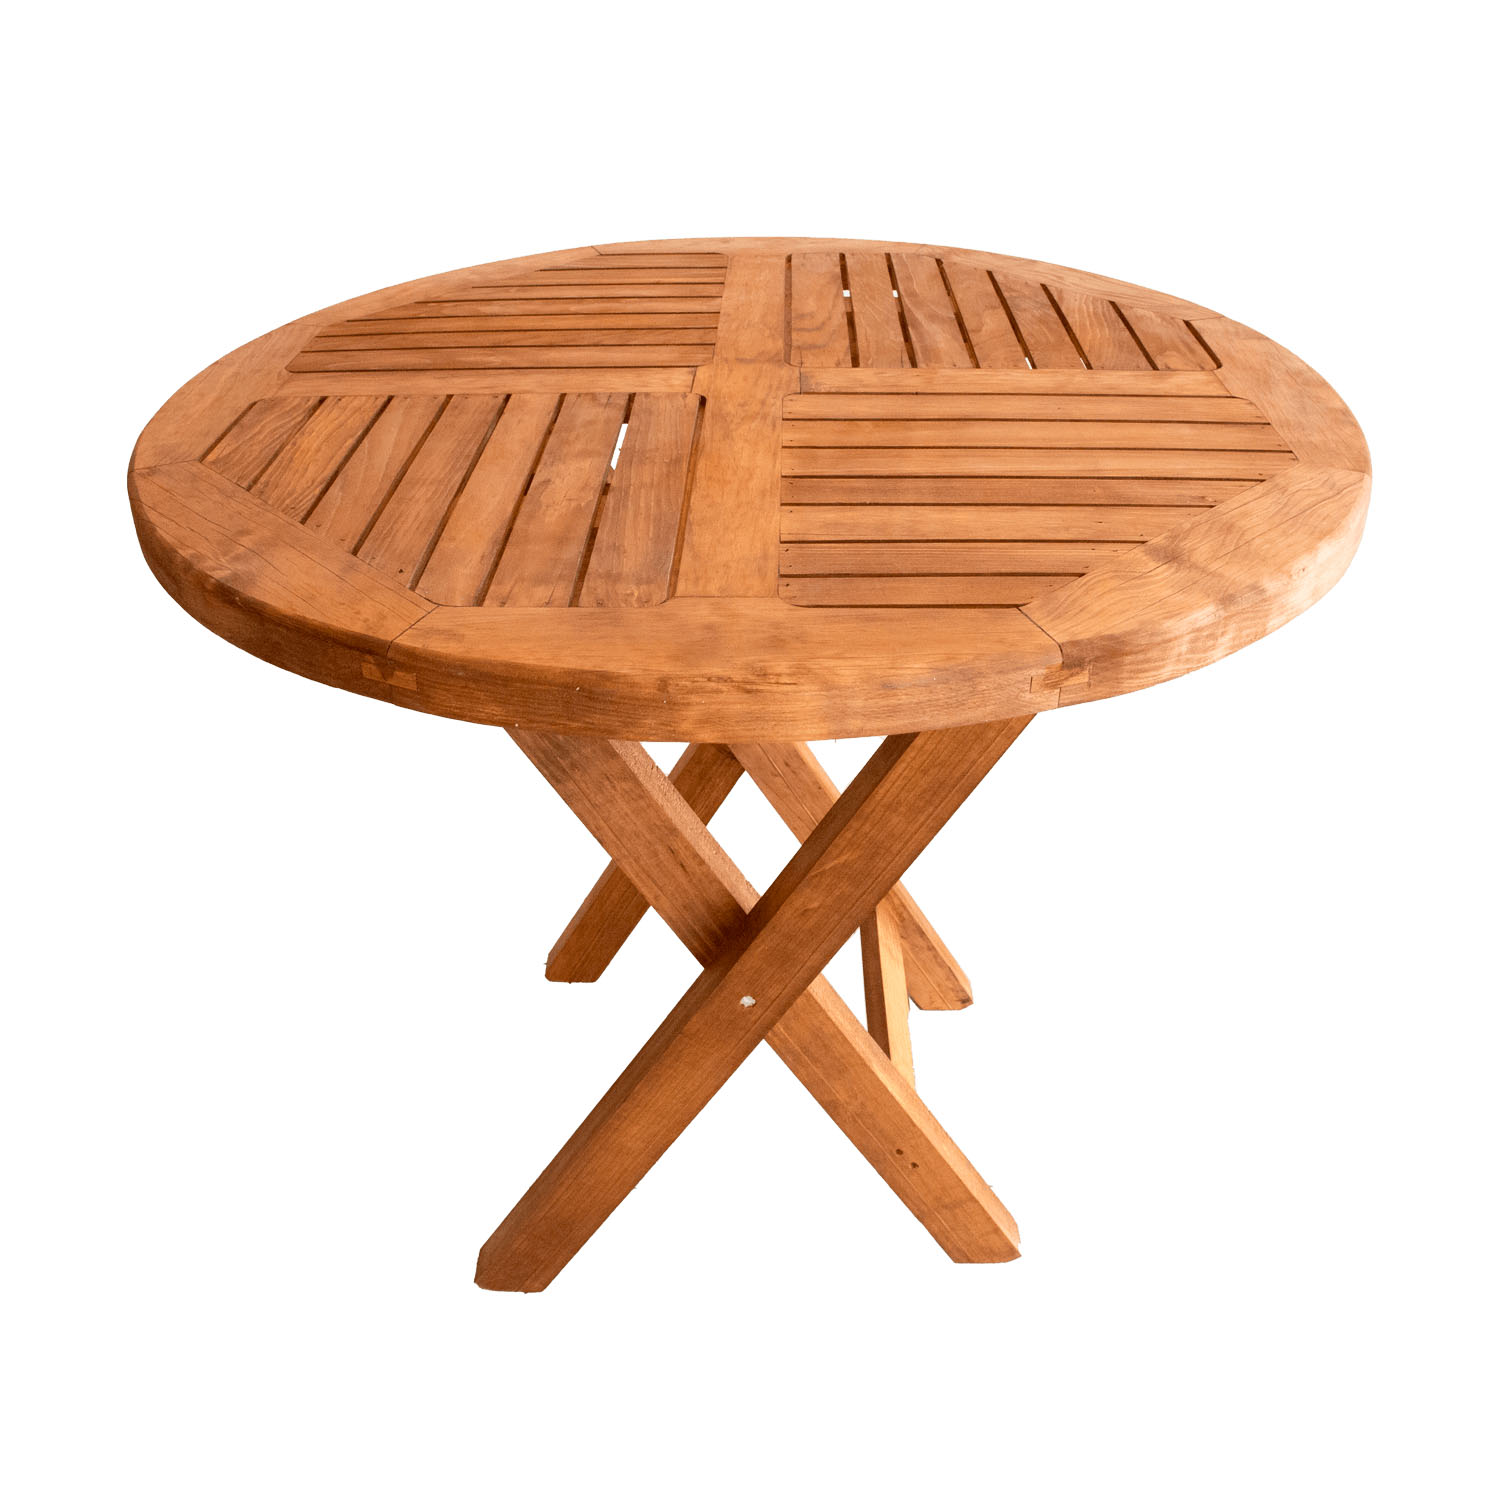 Conjunto mesa redonda jardín 150 cm y 6 sillas de madera y cuerda